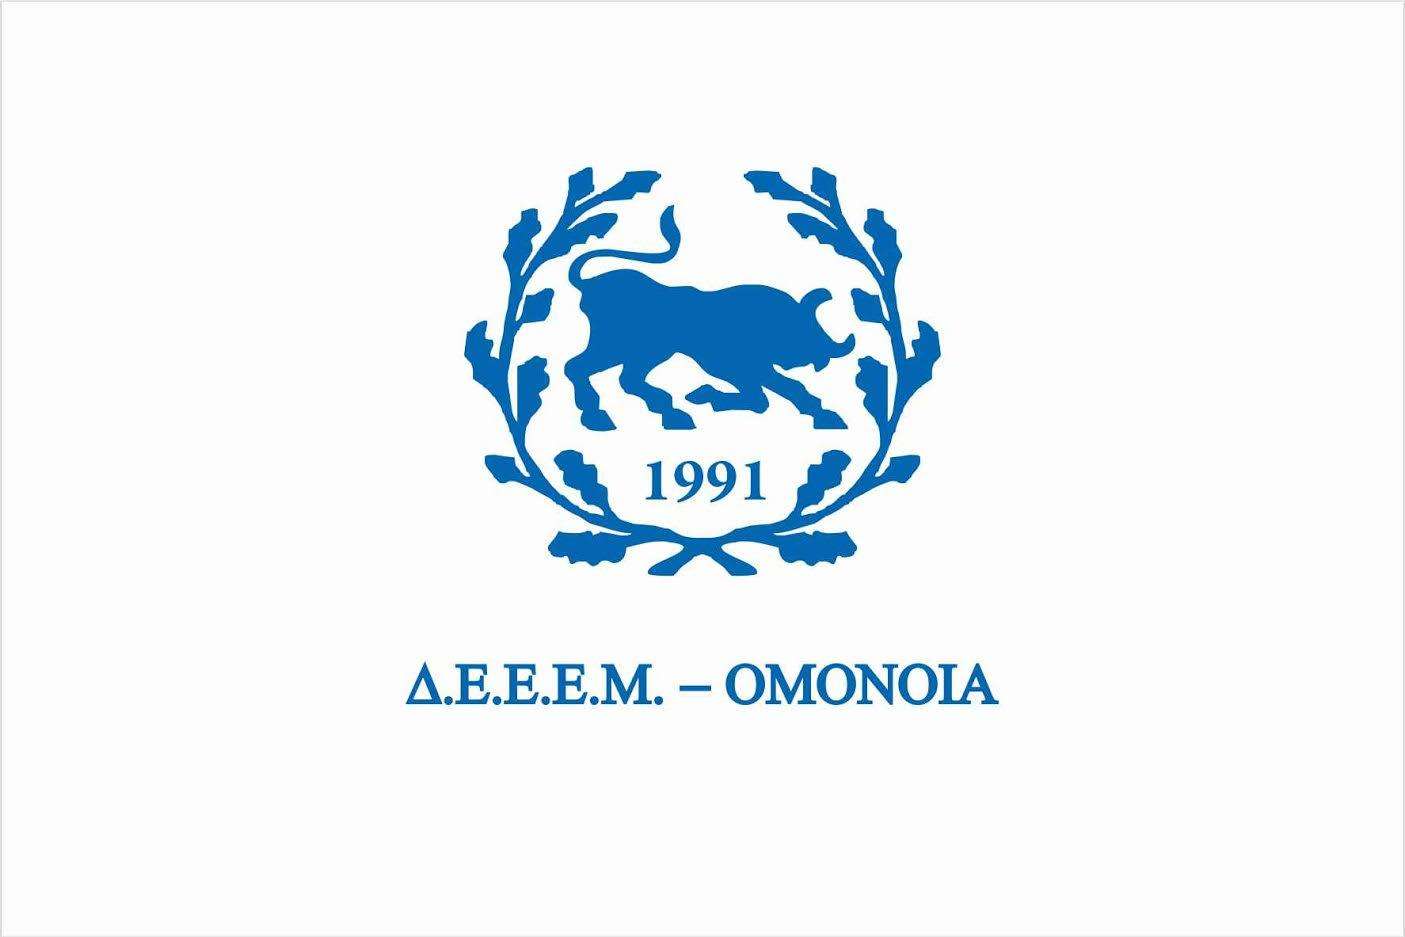  ΔΕΕΕΜ-ΟΜΟΝΟΙΑ : Τρομοκρατικό κτύπημα στην καρδιά της ΕΕΜ η ανατίναξη του μνημείου του αγωνιστή Θύμιου Λώλη  